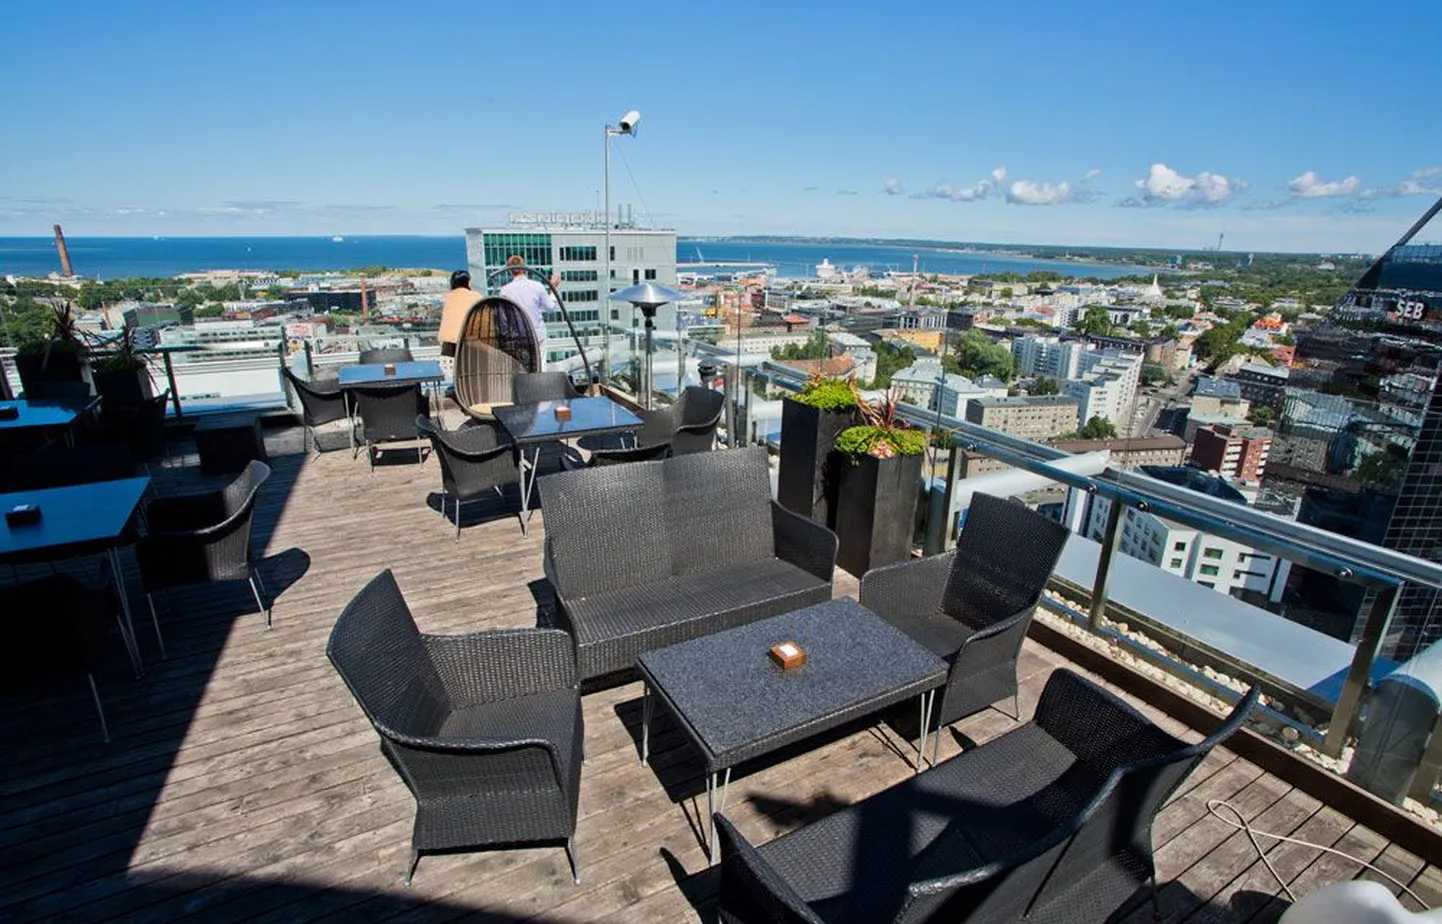 Lounge 24 Radisson Blu hotellis
Reisiportaalis jetsettimes.com maailma parimate katusebaaride hulka valitud 60-kohalise Lounge 24 trumbiks on ainulaadne vaade pealinnale: külalise silmale avaneb Radisson Blu hotelli kõrgeimalt korruselt kogu kaunis linnapanoraam. Erilisteks puhkudeks pakutakse siin aga ka Tallinna ilmselt kalleimat kokteili: 24 Carat Golden Sunset maksab 260 eurot.